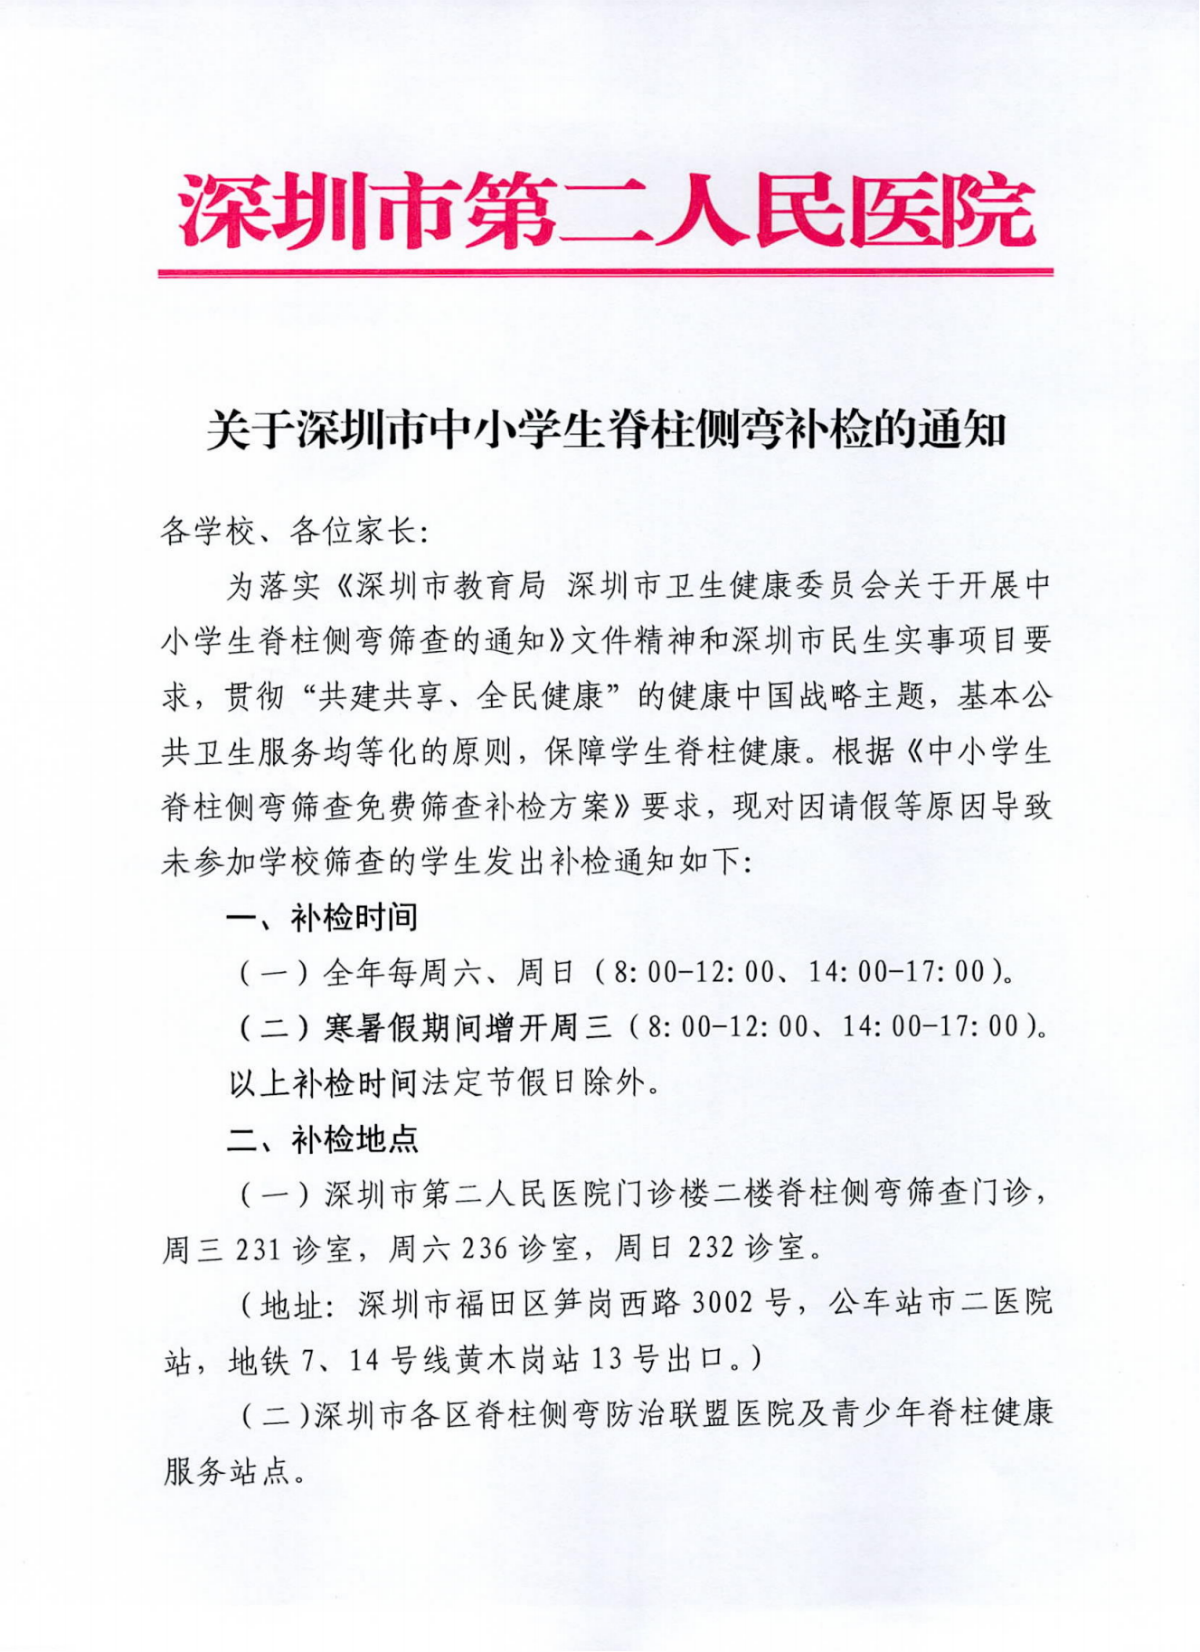 关于深圳市中小学生脊柱侧弯补检的通知_00.png